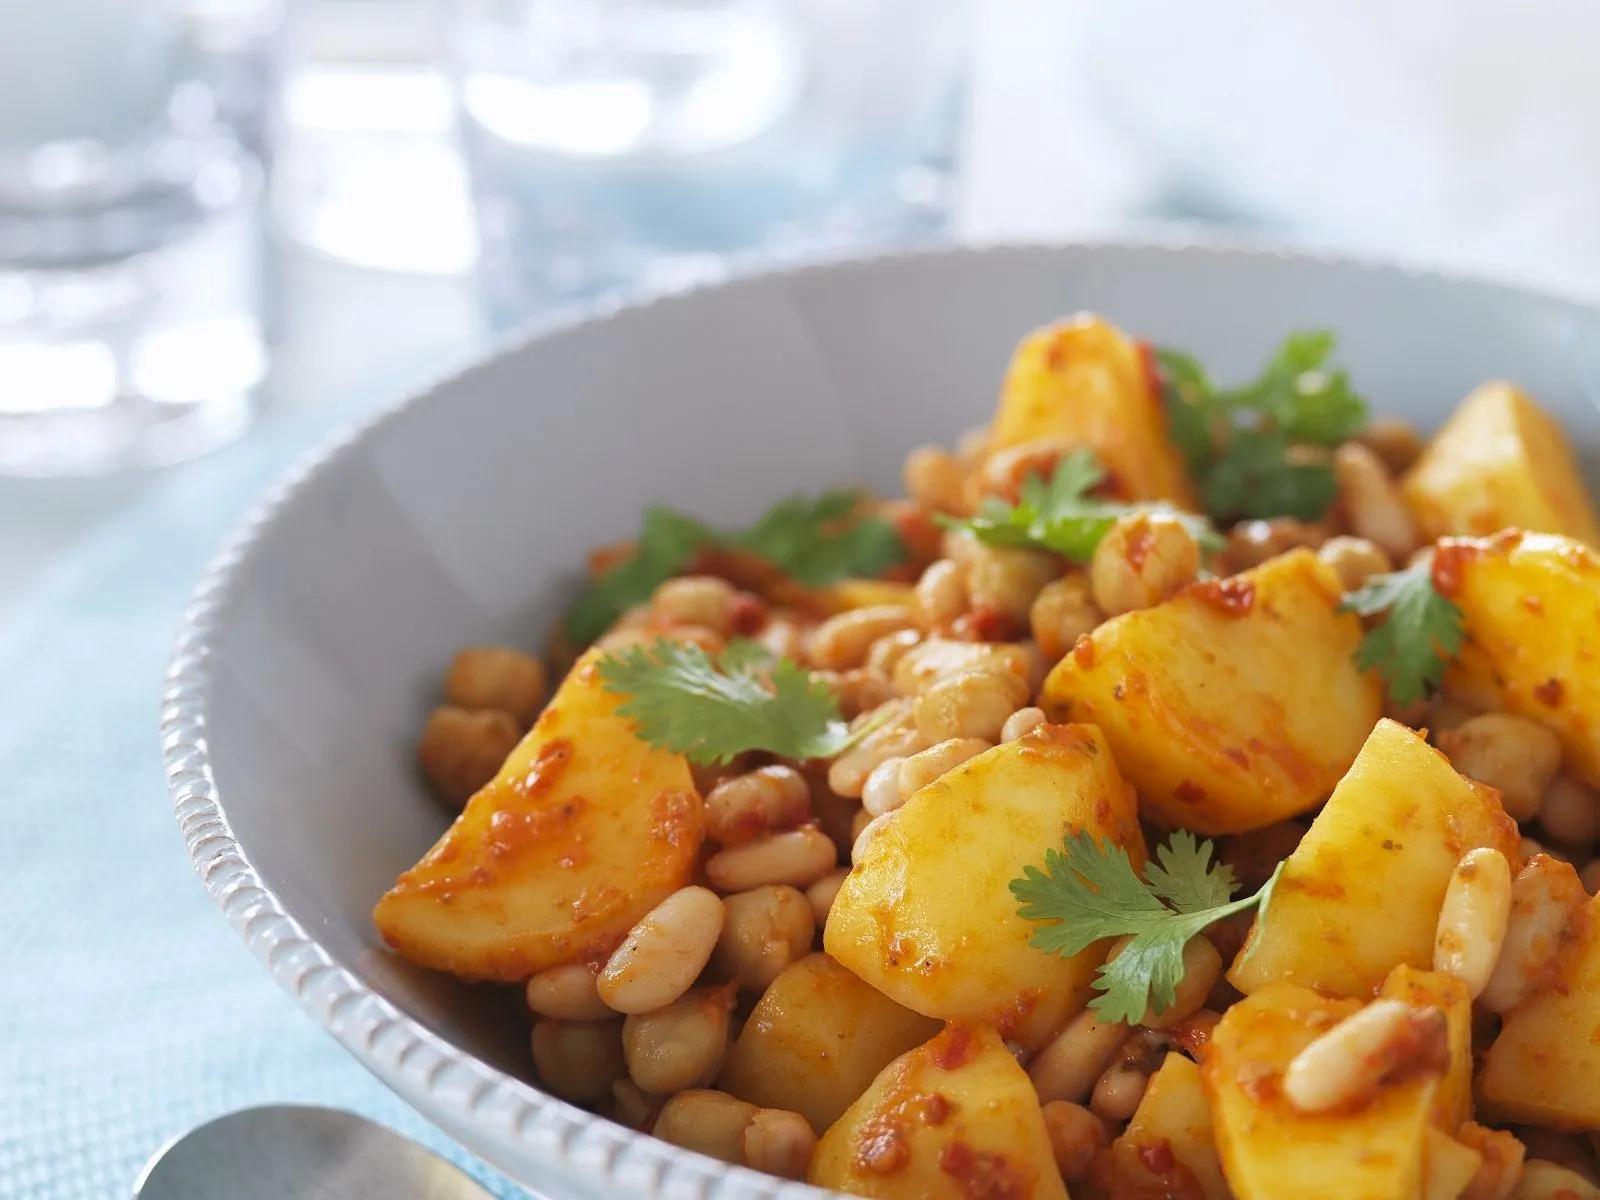 Kartoffelpfanne mit Kichererbsen und Cannellini-Bohnen Rezept | EAT SMARTER